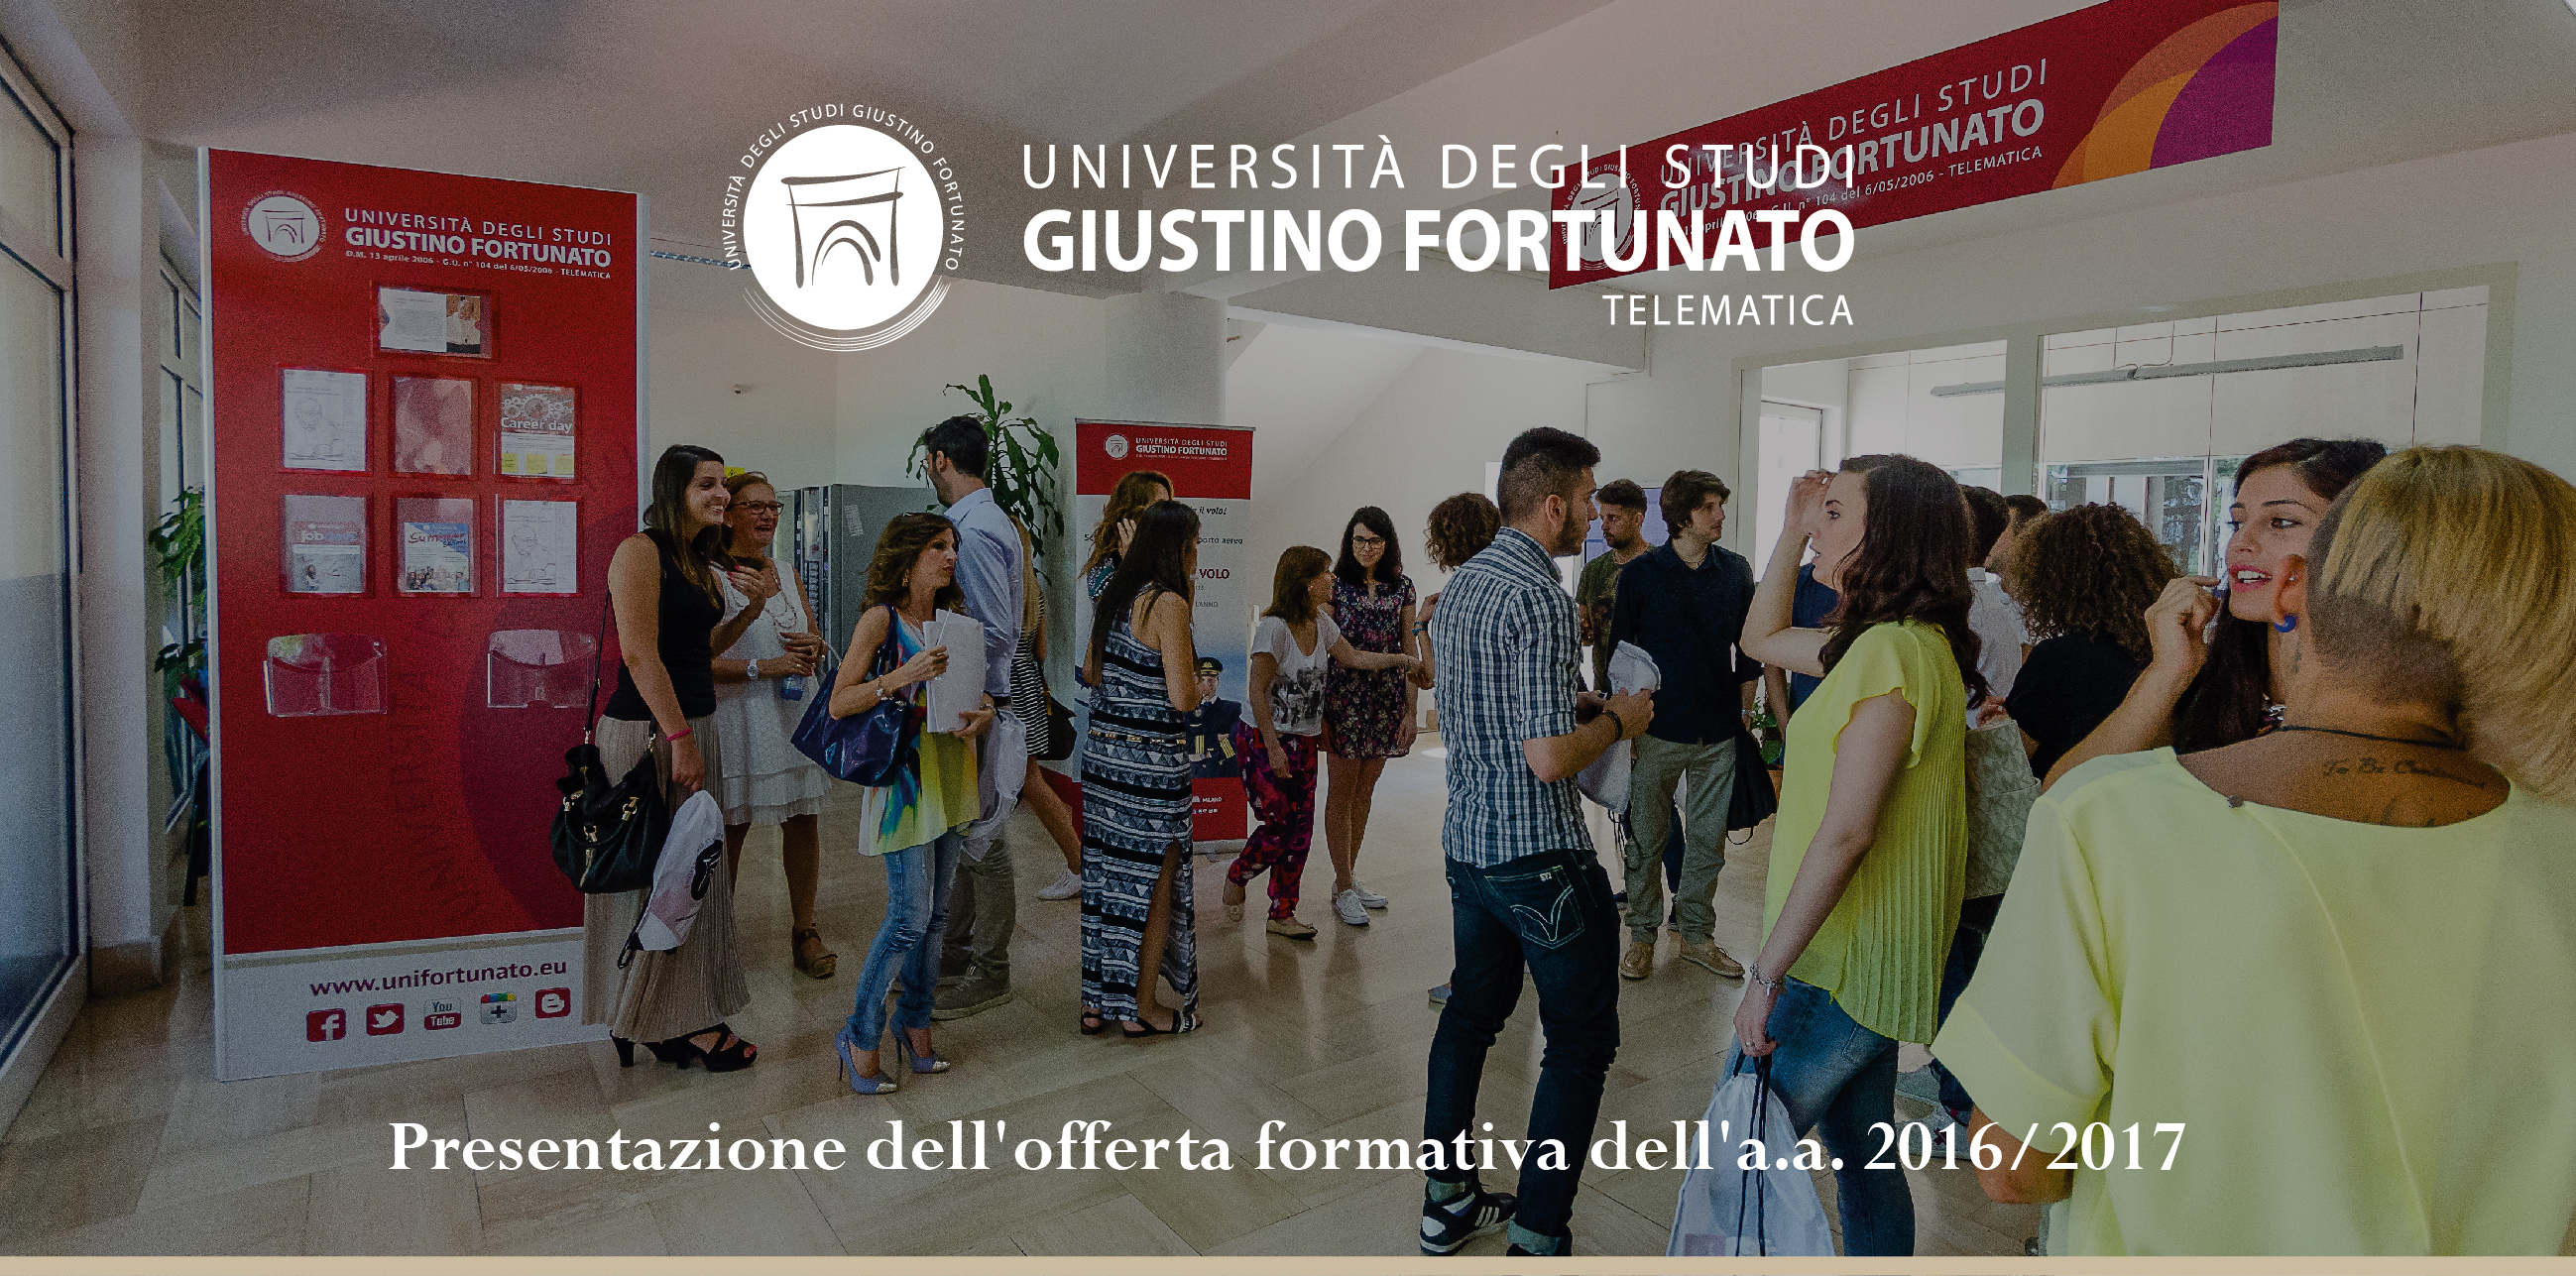 Alla Giustino Fortunato si presenta l’anno scolastico 2016/2017